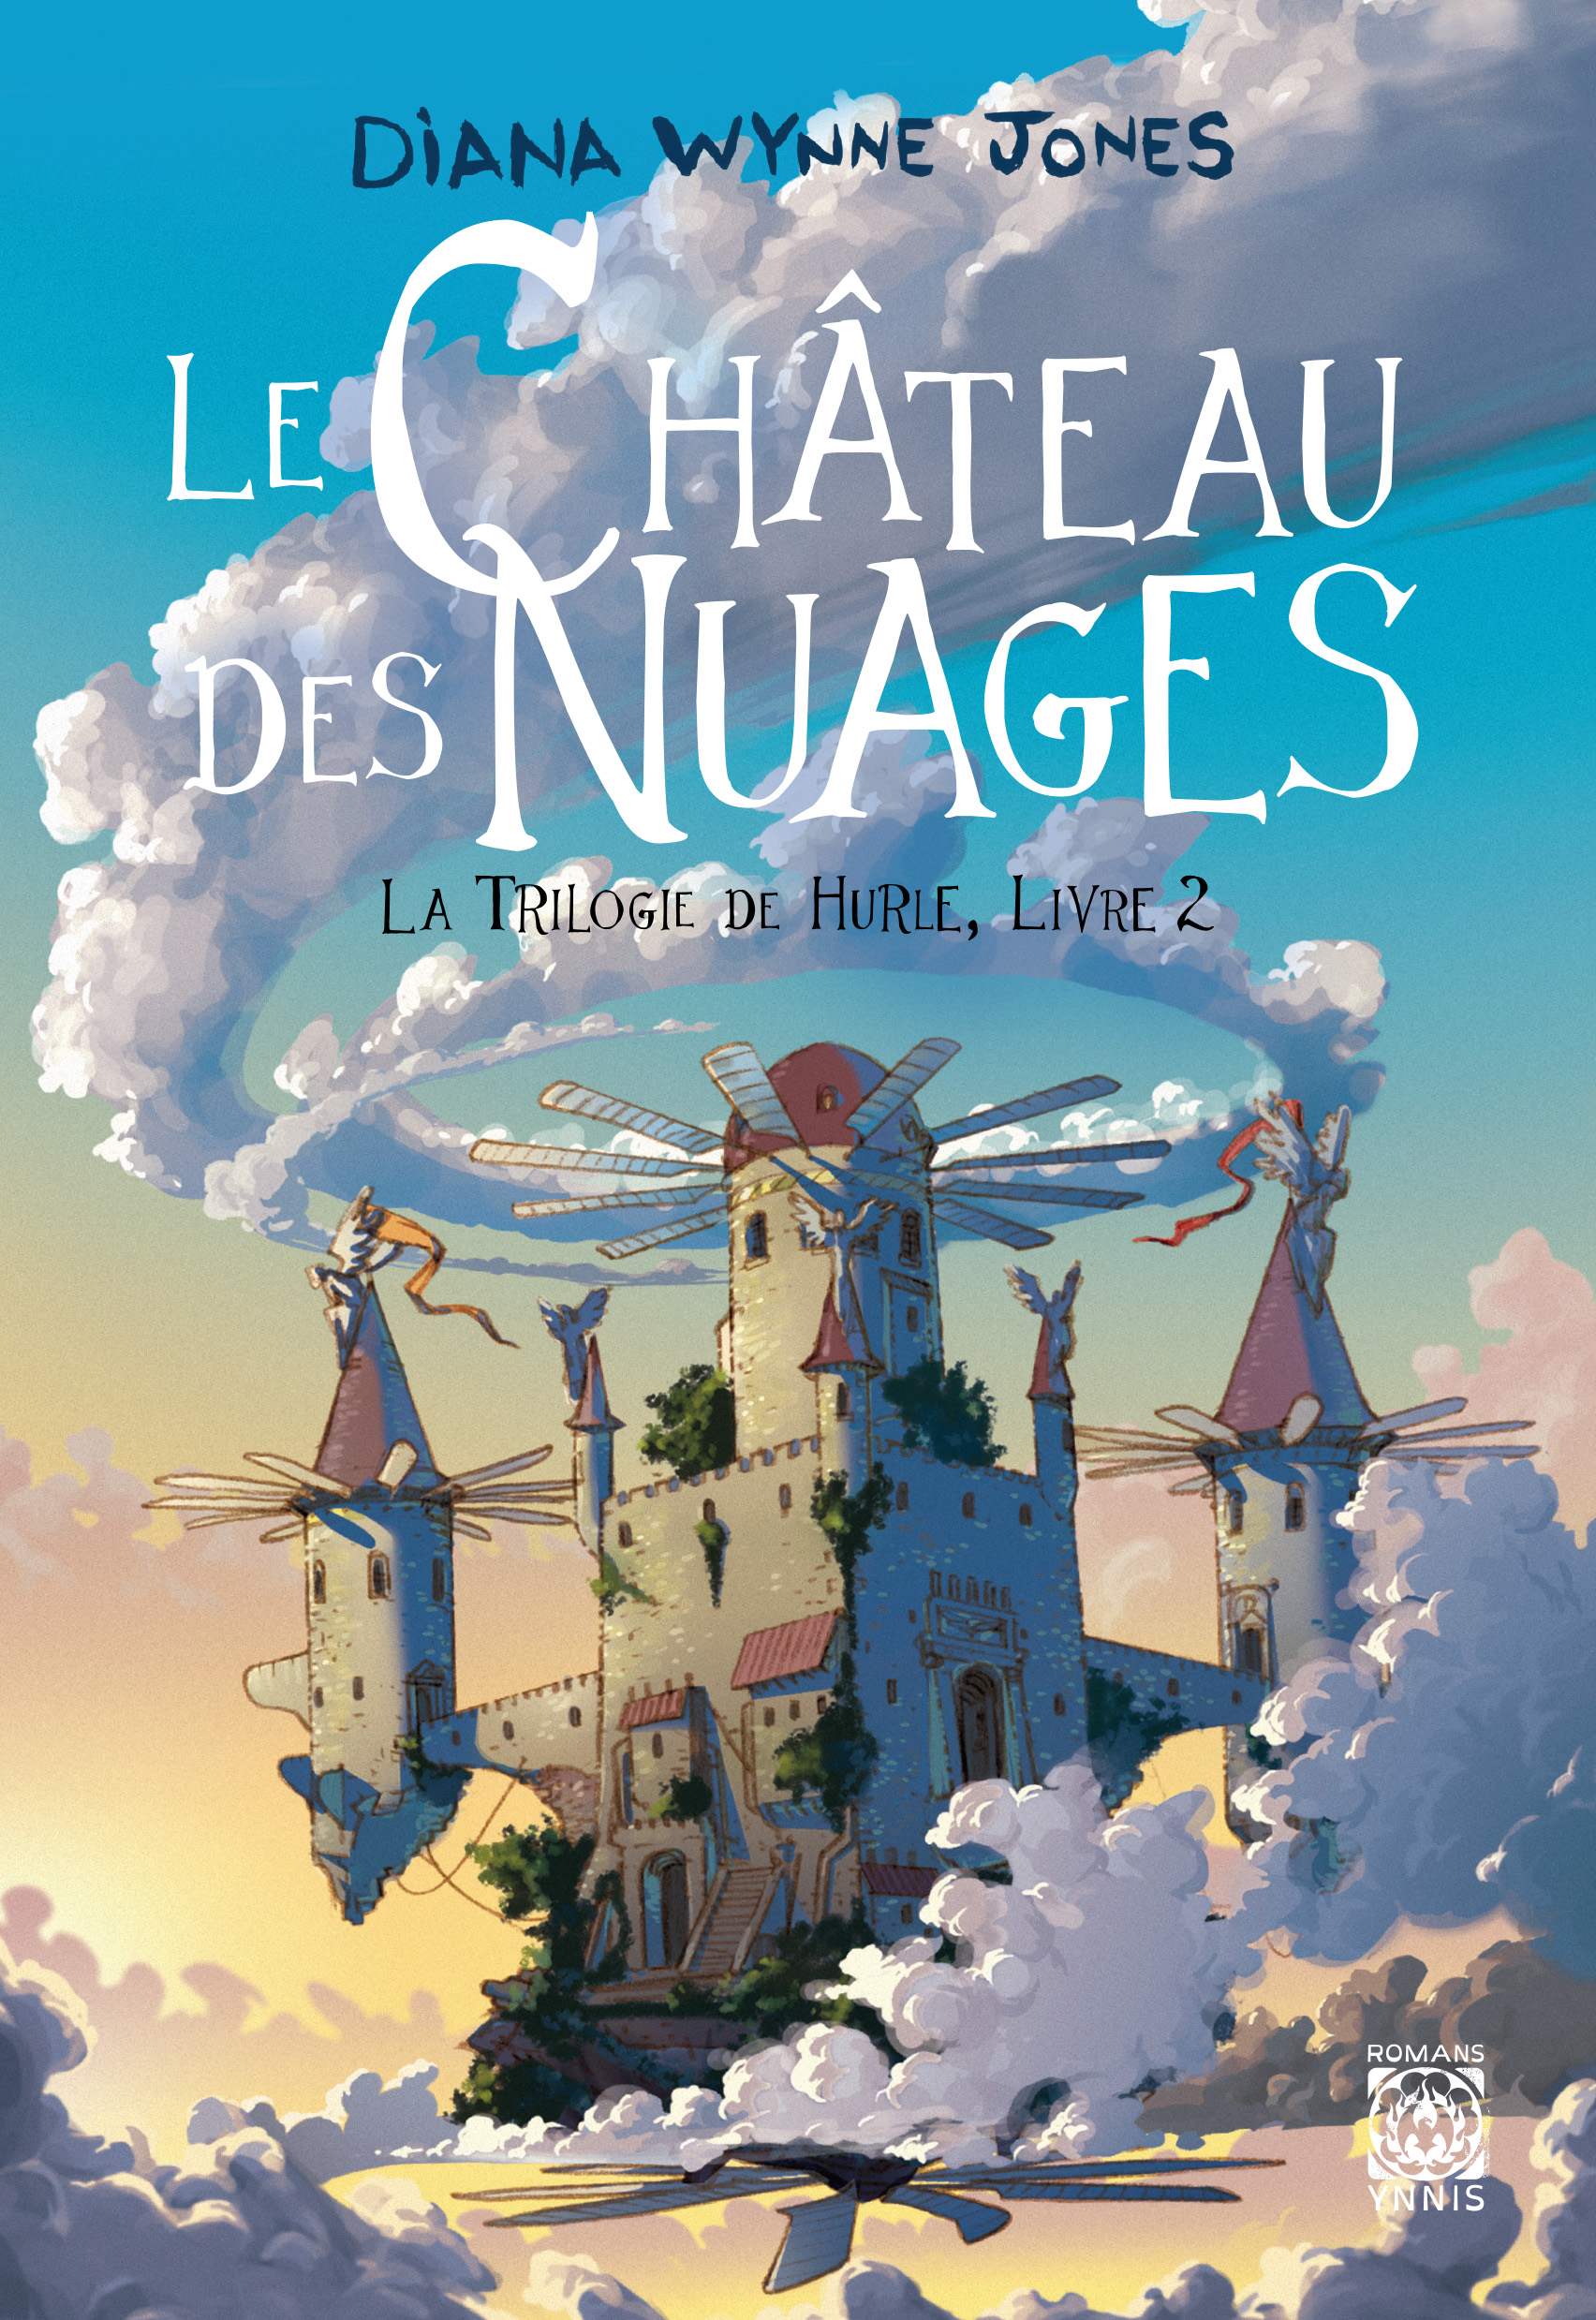 Le Château de Hurle - Ynnis Editions